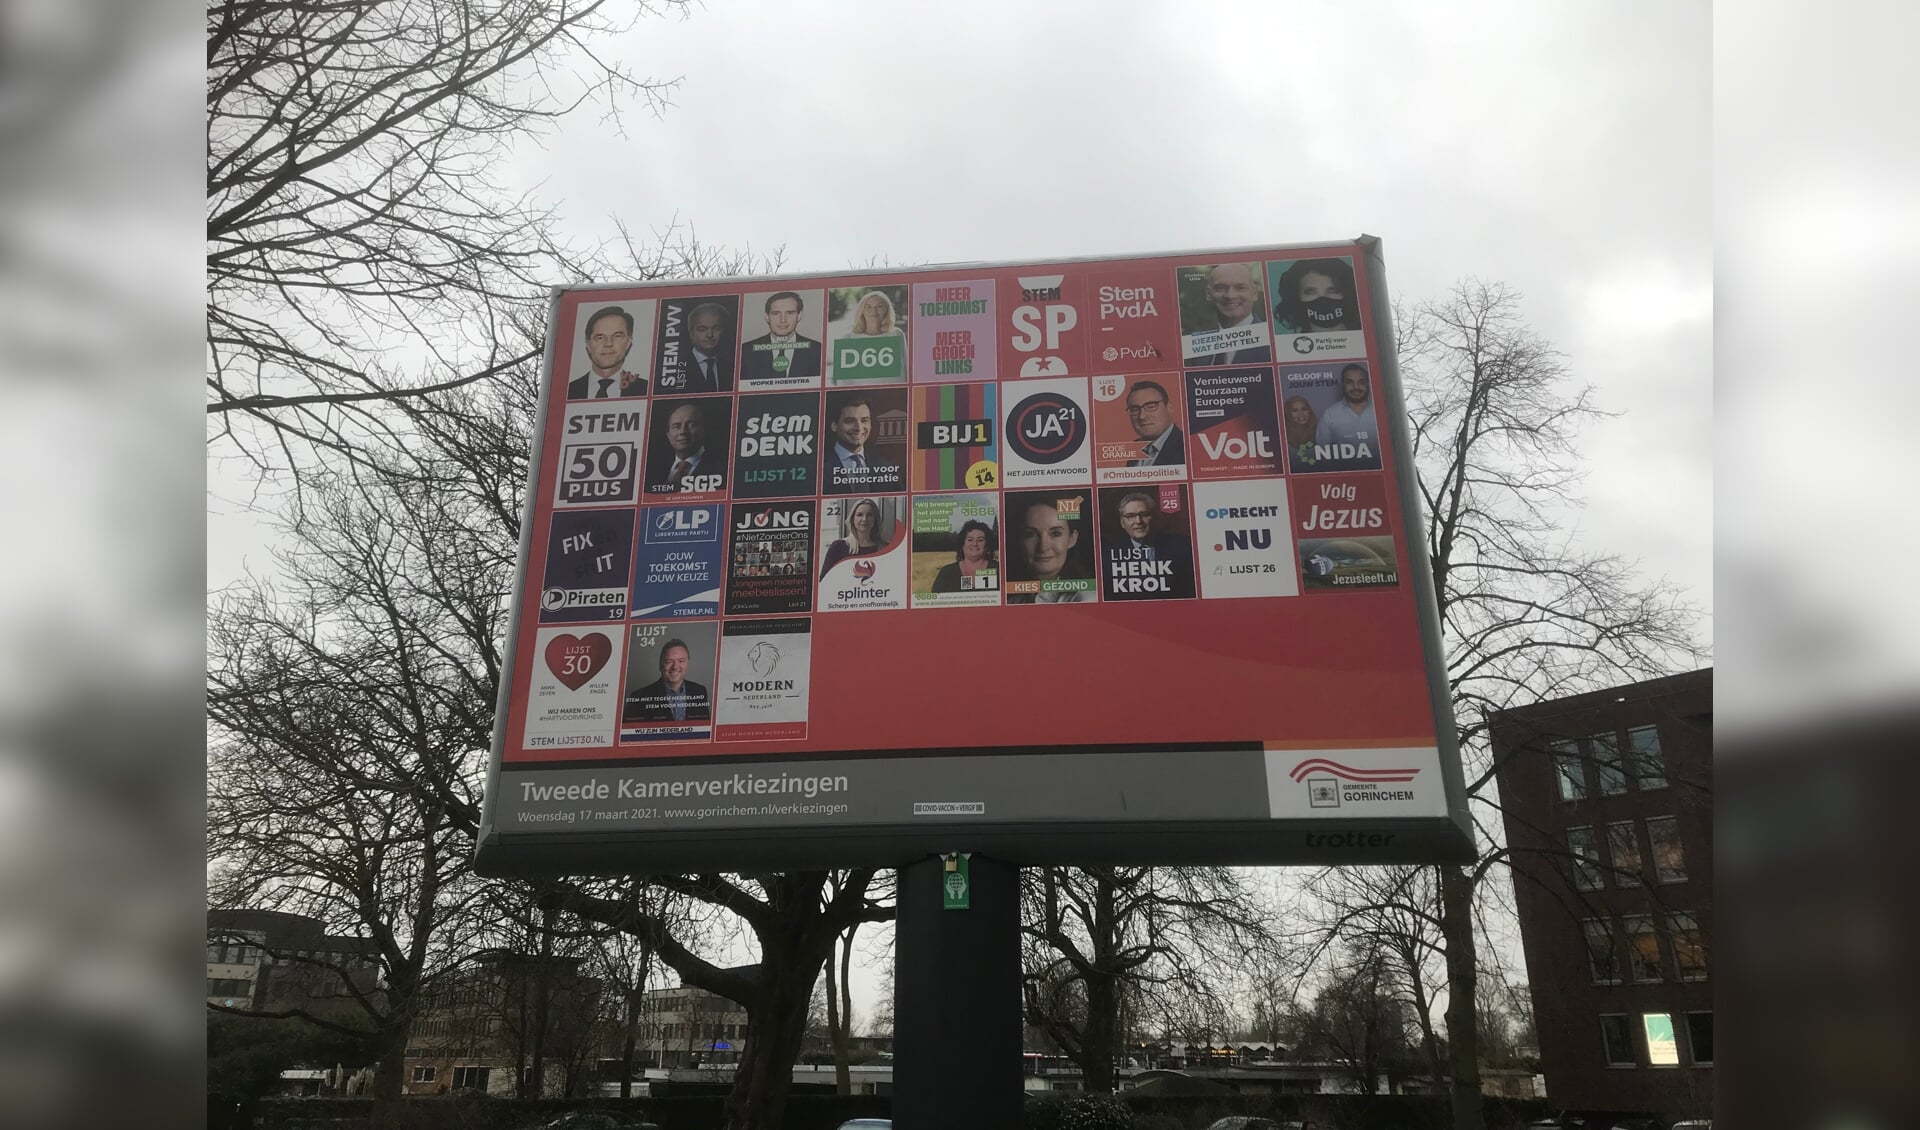 Op het aanplakbord van de gemeente Gorinchem staan dertig partijen, in totaal doen 37 partijen mee aan de Kamerverkiezingen